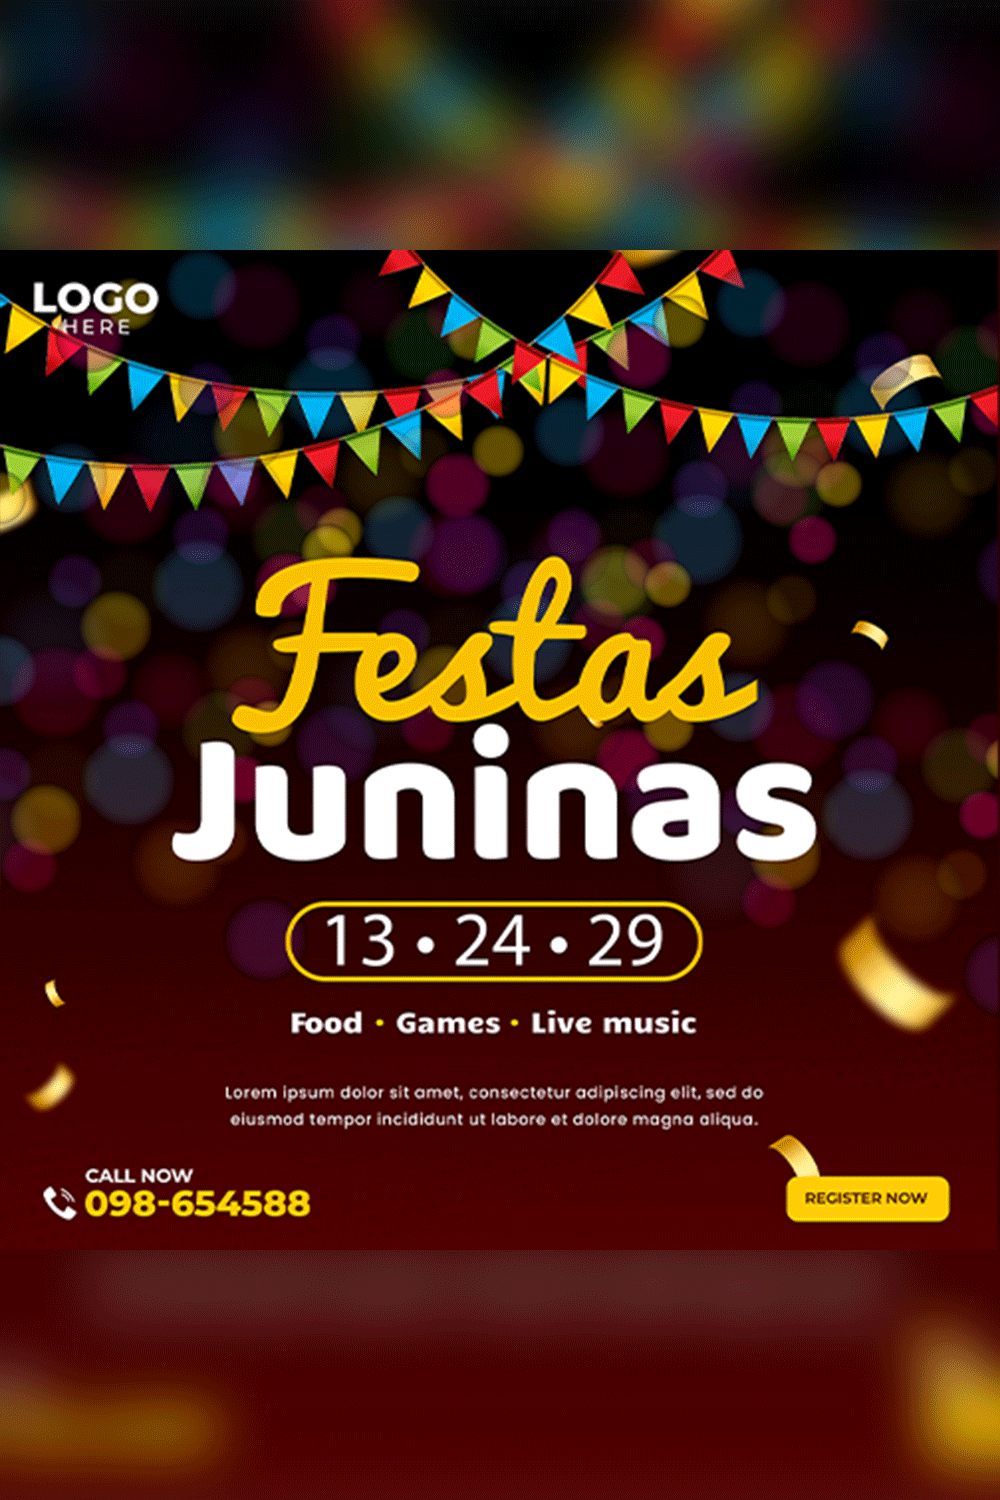 social media post for Festa Junina brazil event PSD pinterest preview image.